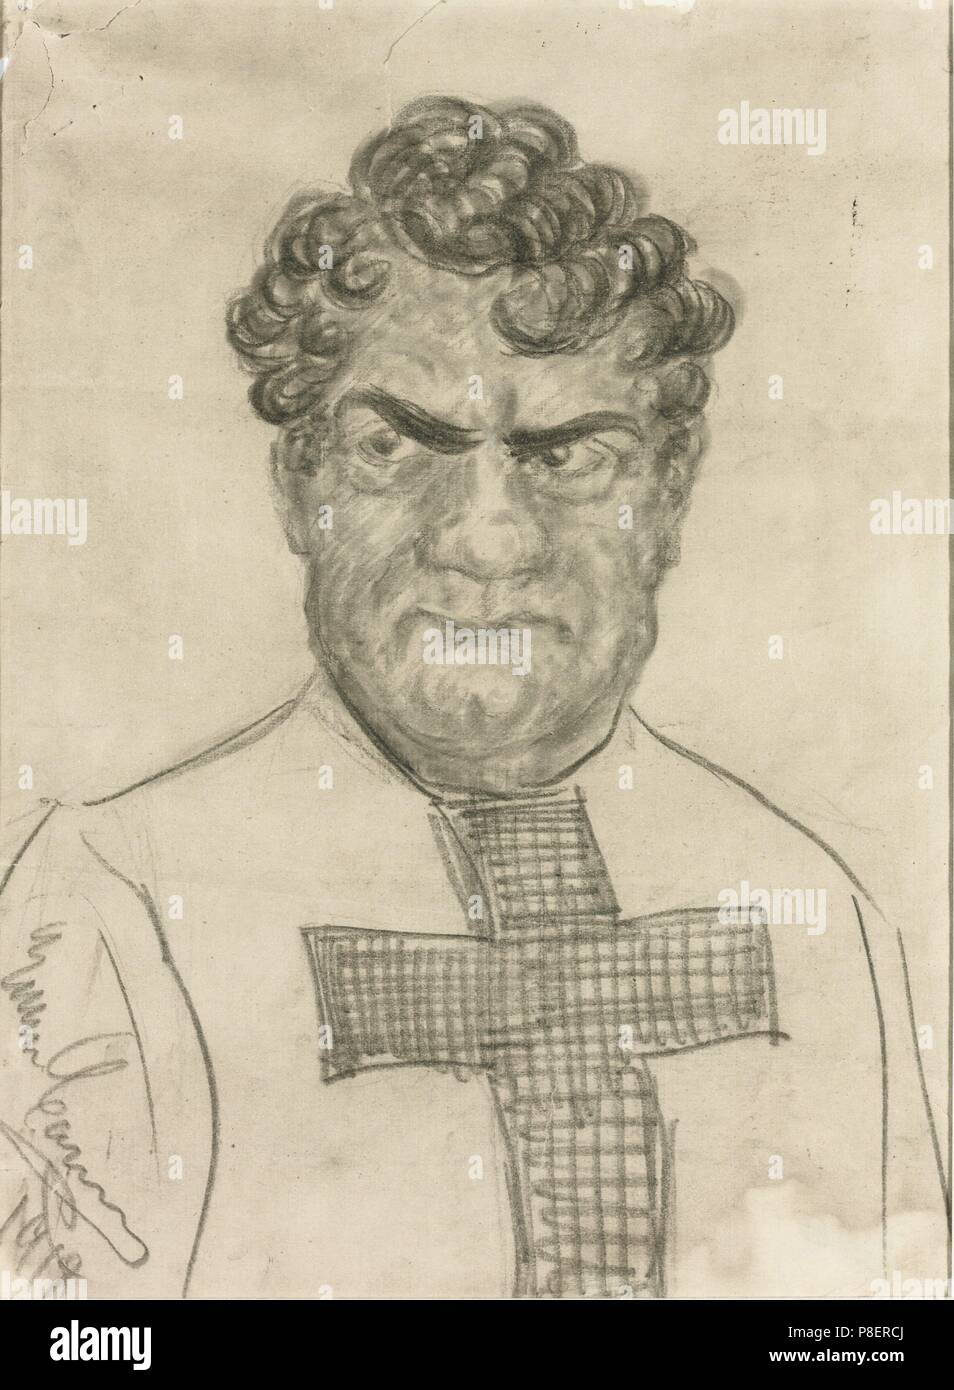 L'auto-caricature dans le rôle de Don Alvaro dans l'Opéra La forza del destino de Giuseppe Verdi. Musée : collection privée. Banque D'Images